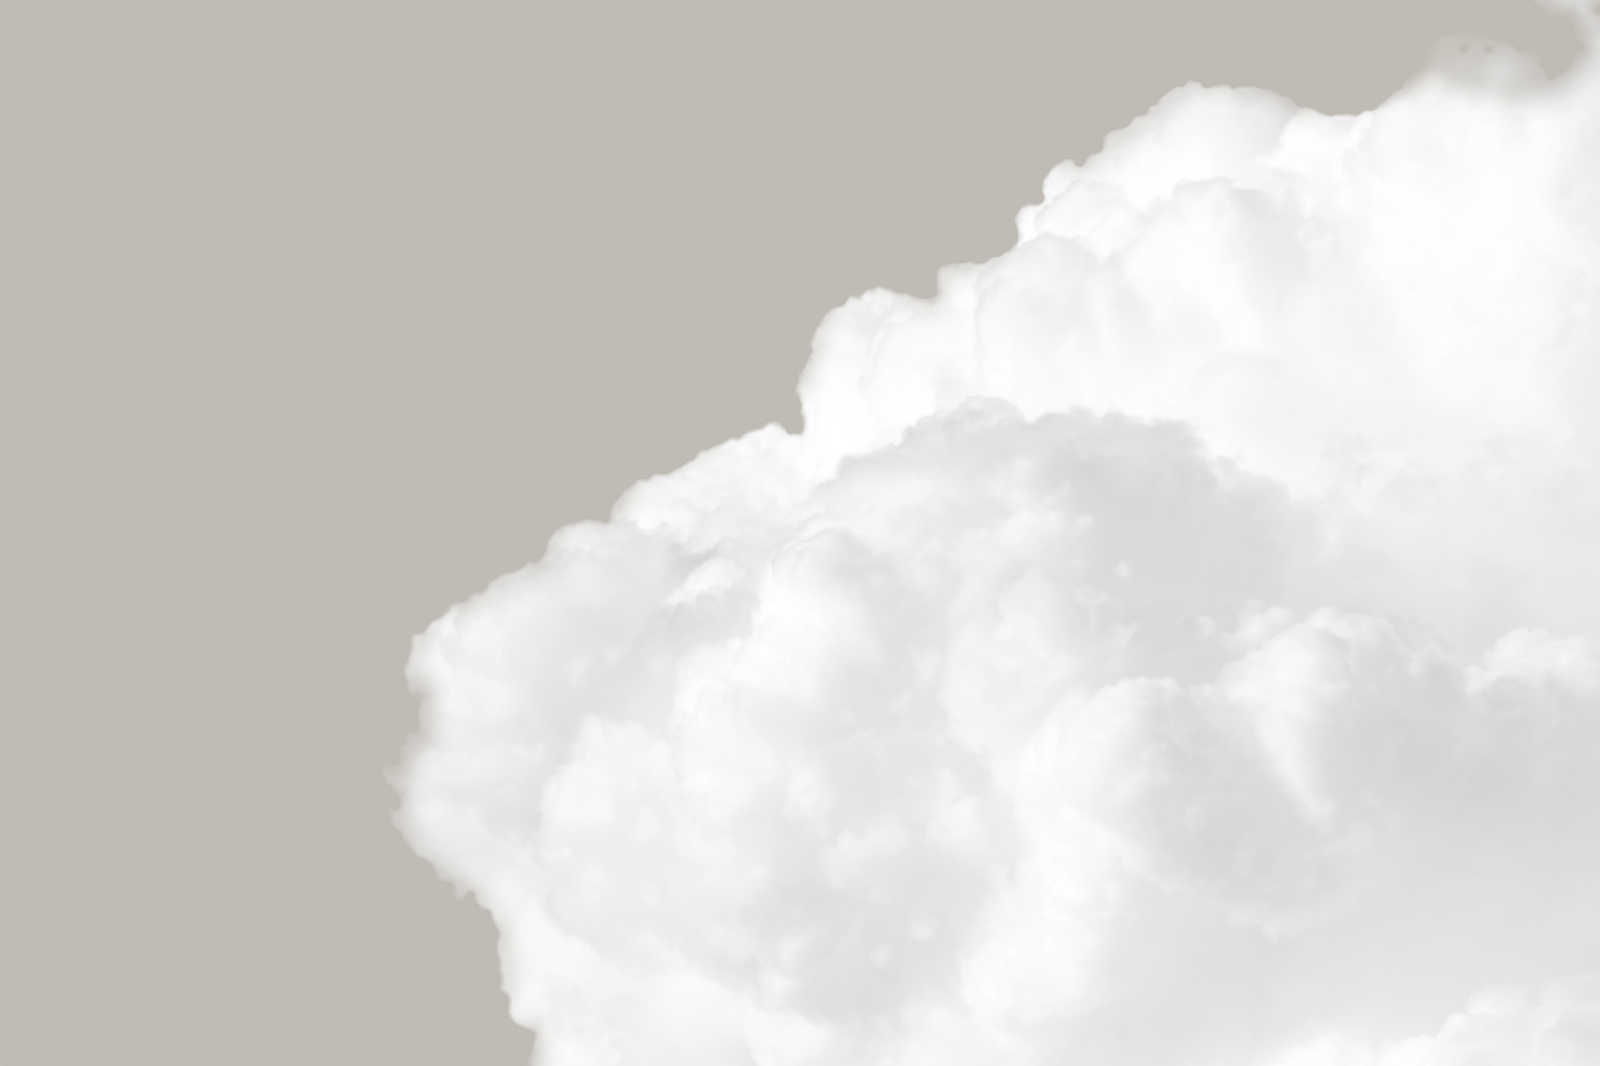             Canvas schilderij met witte wolken in grijze lucht - 0,90 m x 0,60 m
        